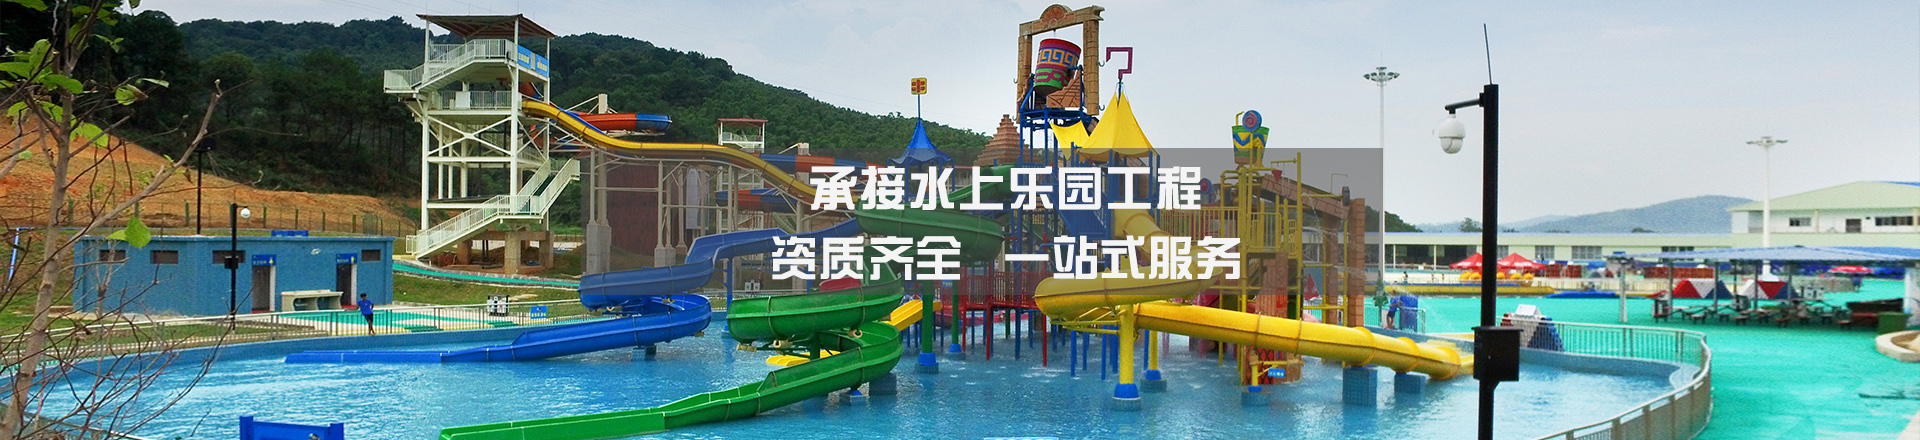 【游泳池项目】木子国际幼稚园游泳池